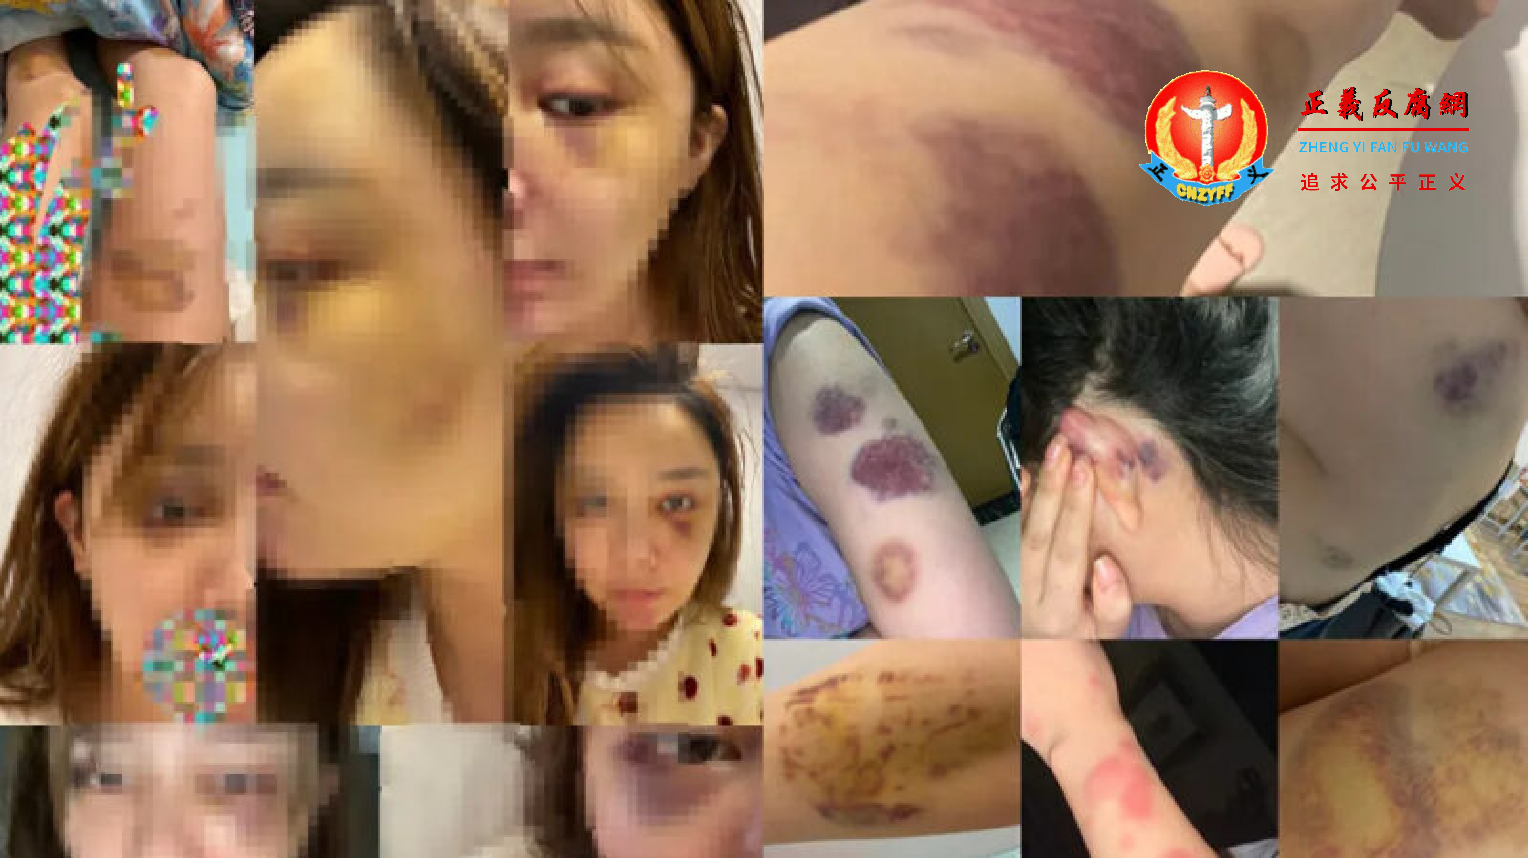 爆料女性小雅po出遭雷姓男子长期殴打的照片.png